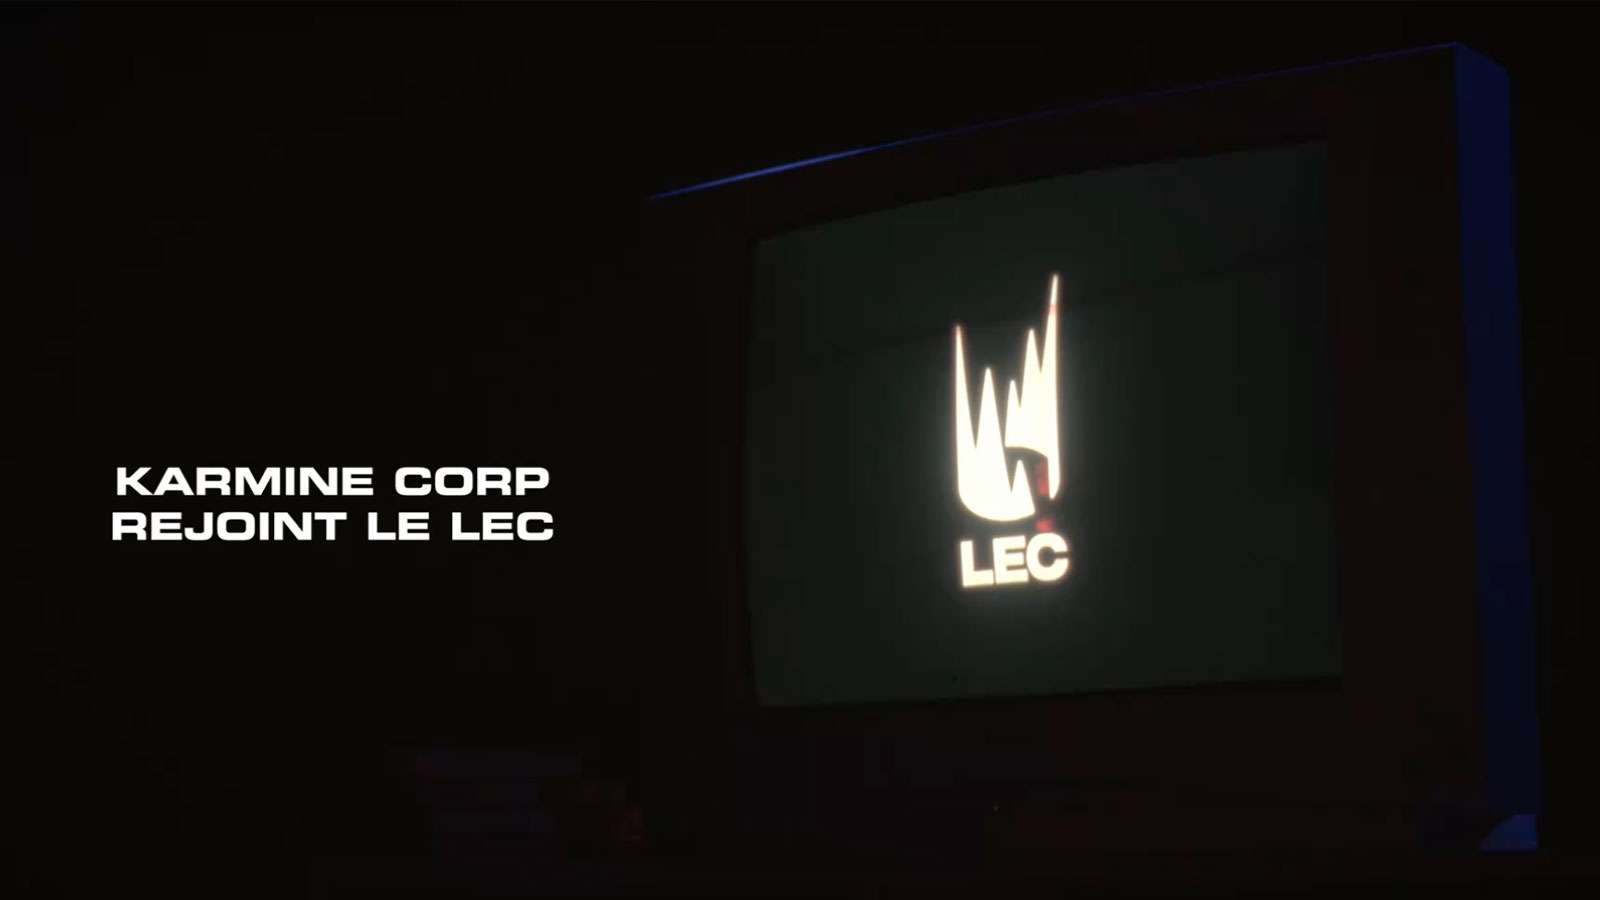 Karmine Corp rejoint le LEC